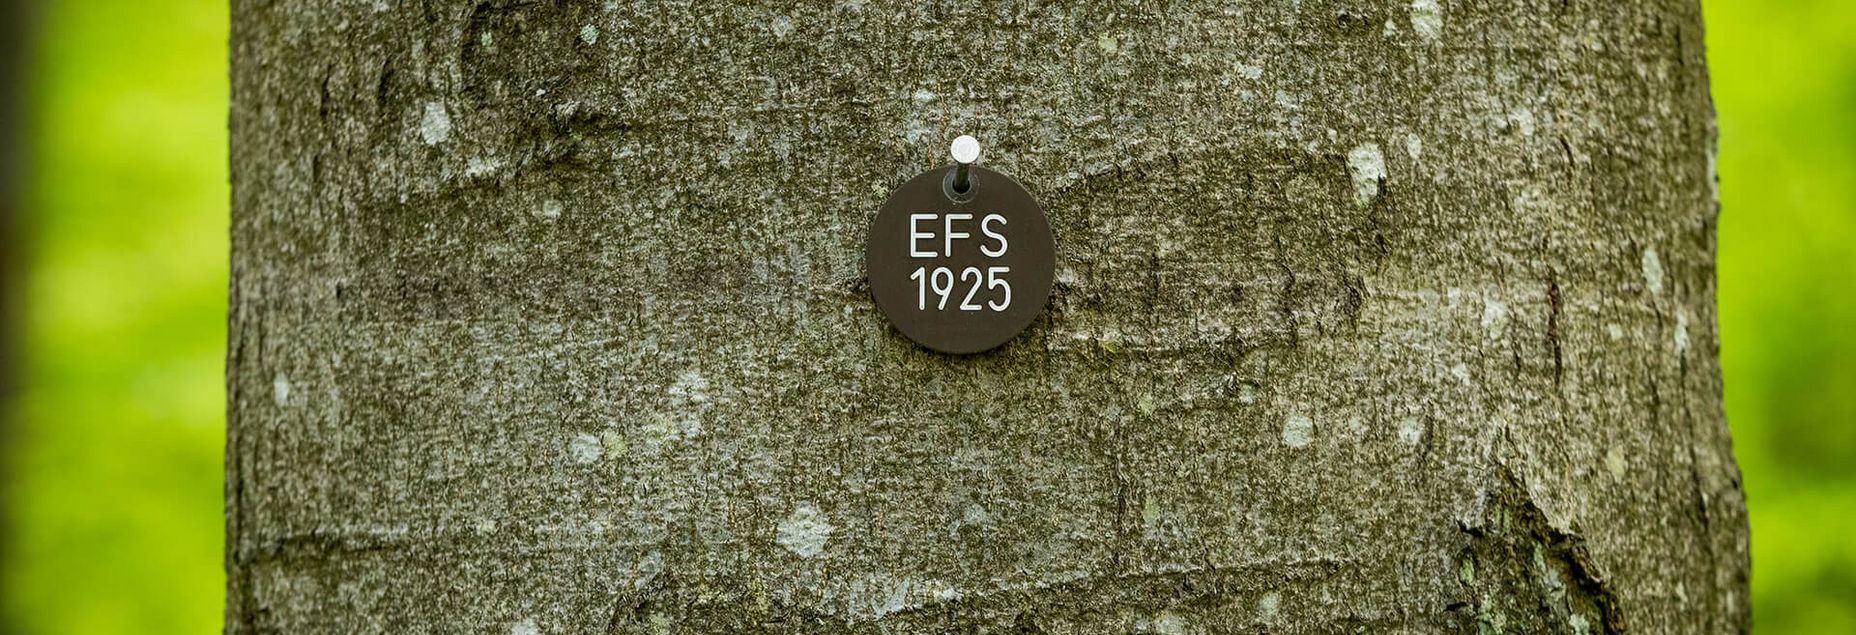 FriedWald-Onlineshop EFS 1925